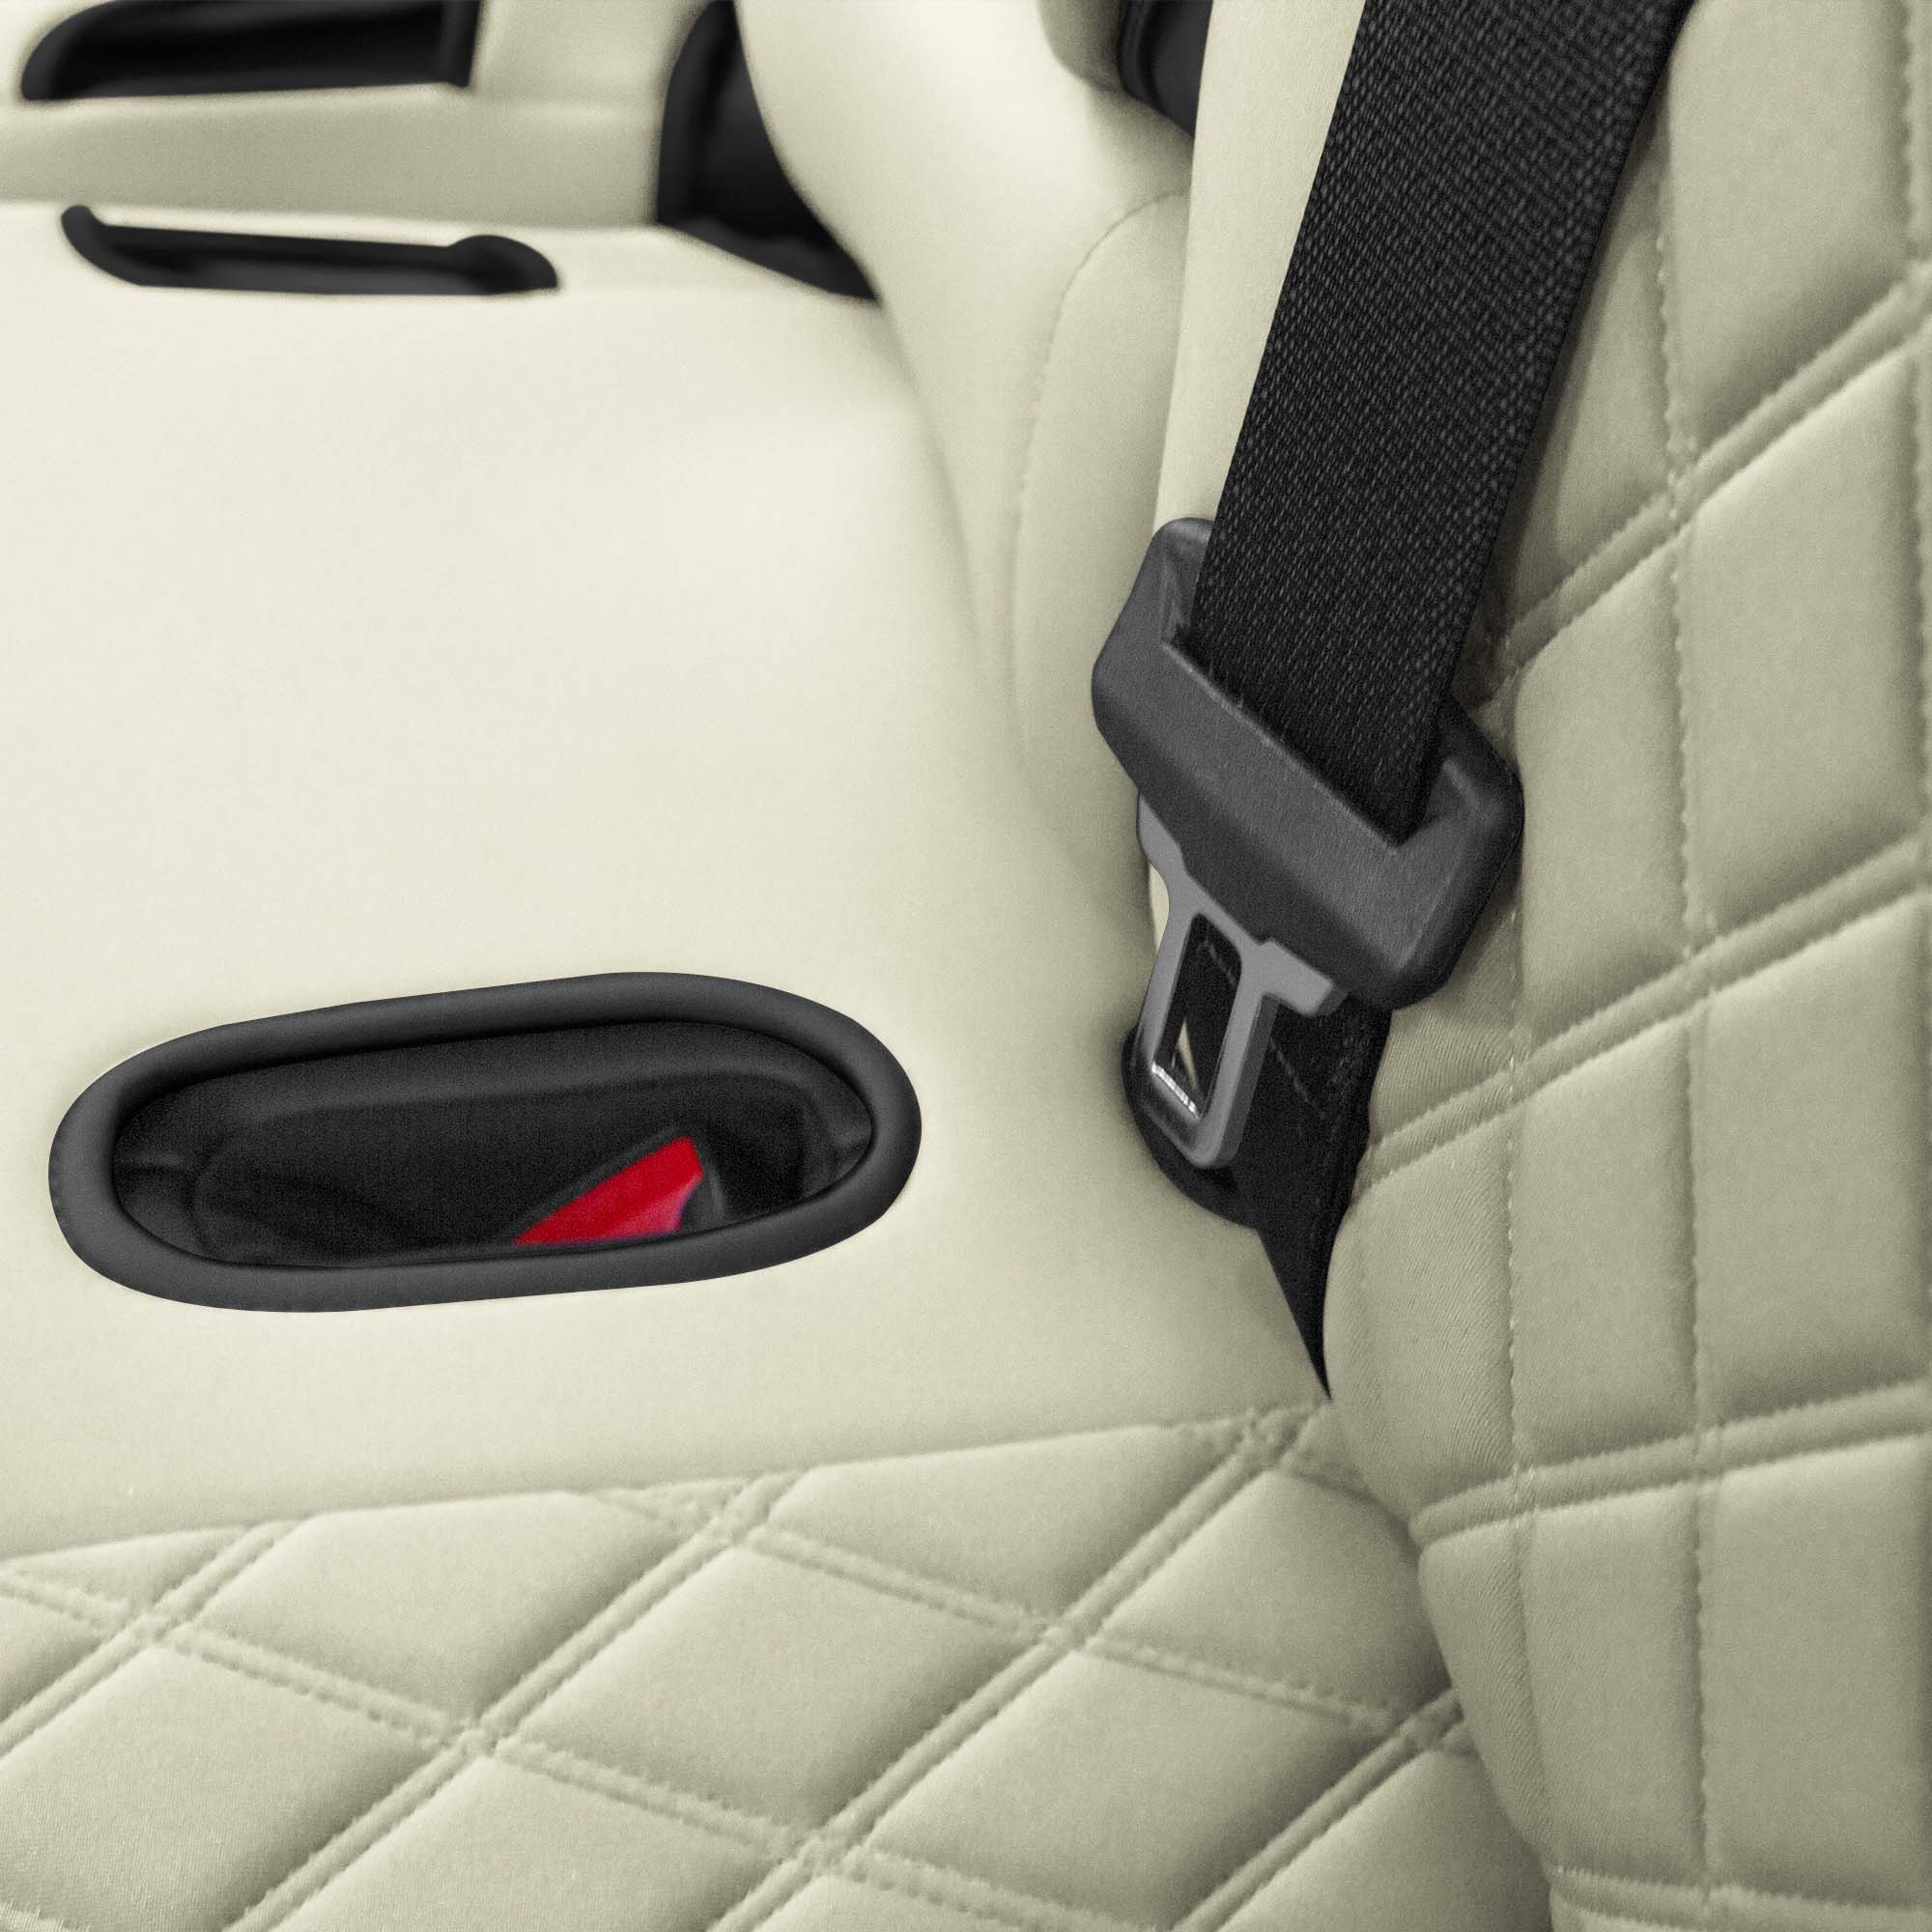 Tesla Model Y 2020 - 2022 - Rear Set Seat Covers - Solid Beige Ultraflex Neoprene